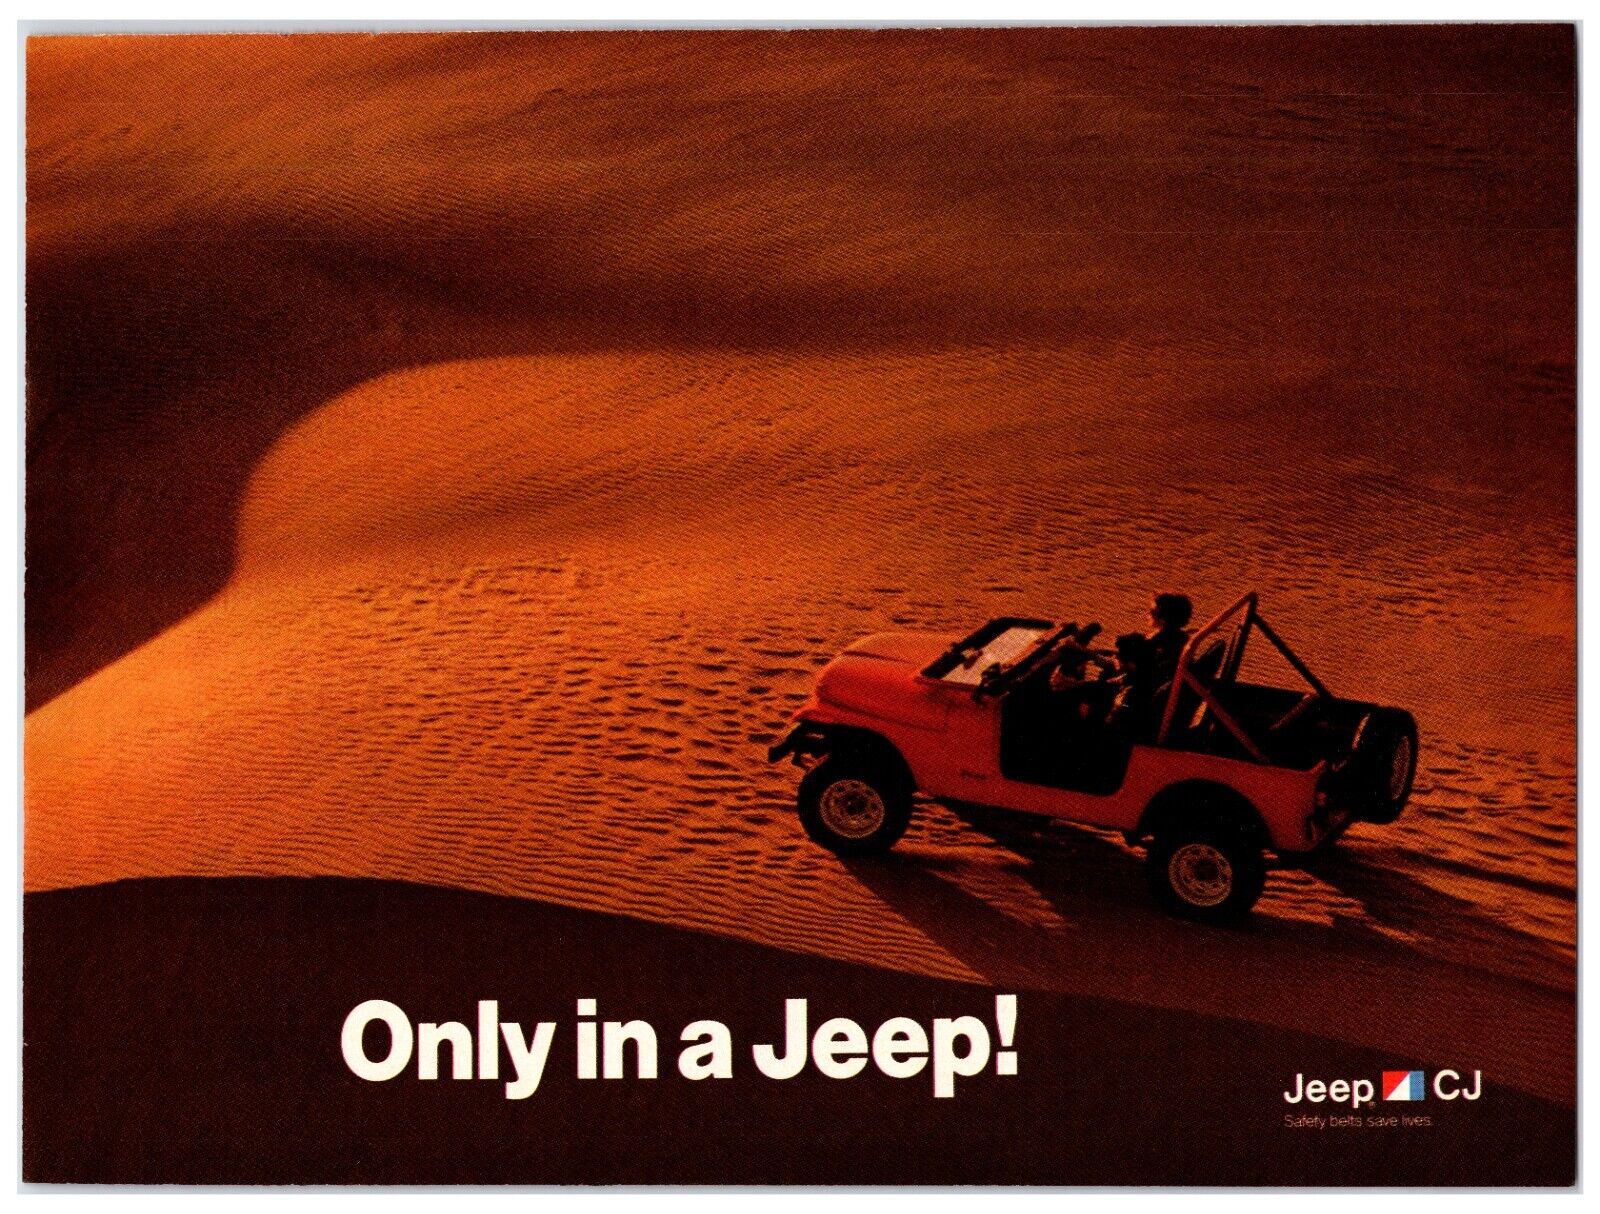 Original 1985 Jeep Cj\'s - Original Print Ad (8x11) *Vintage Advertisement*